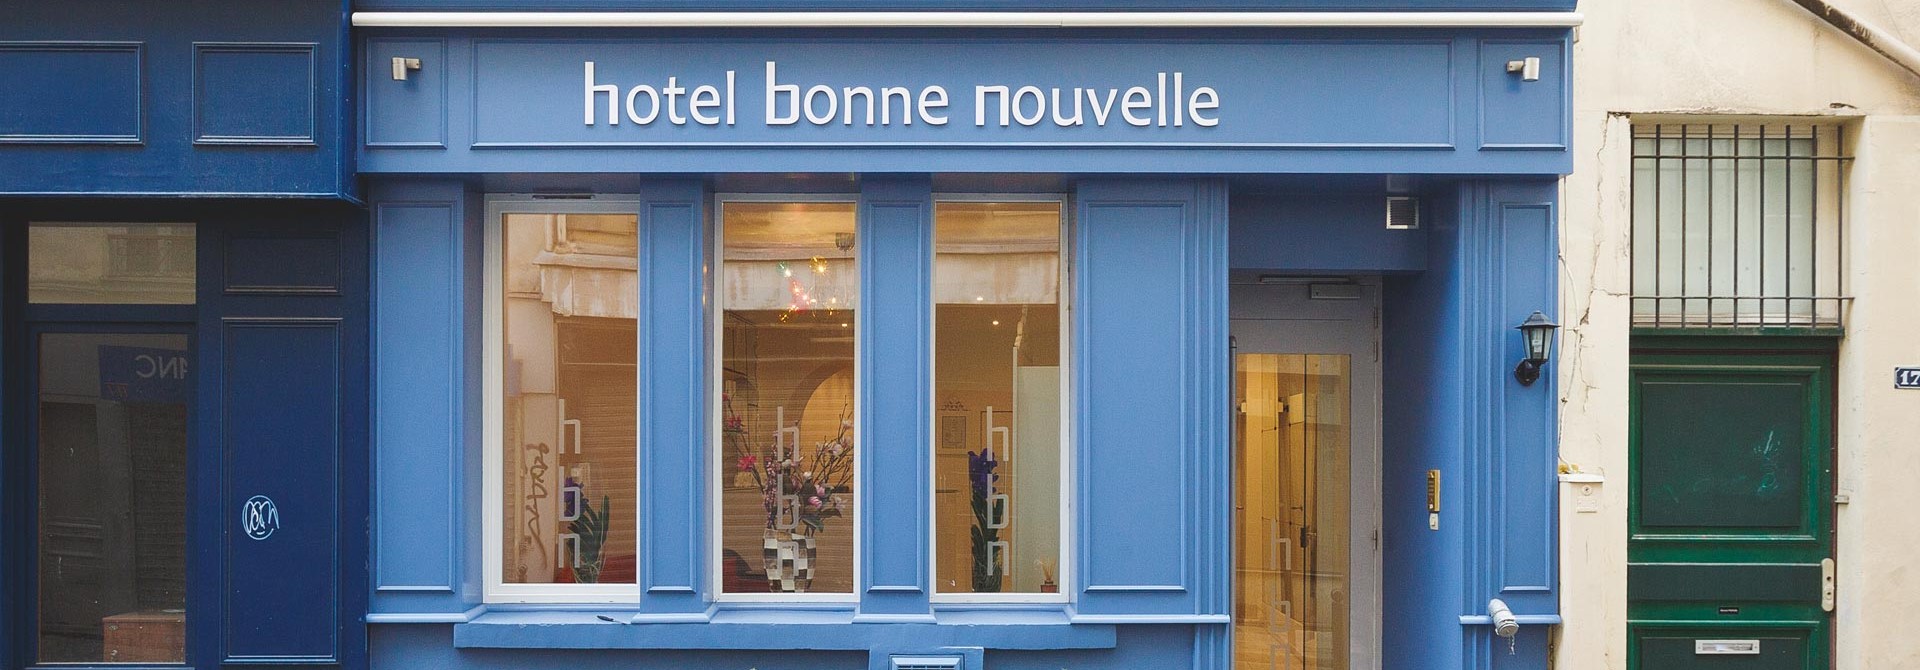 (c) Hotel-bonne-nouvelle.com